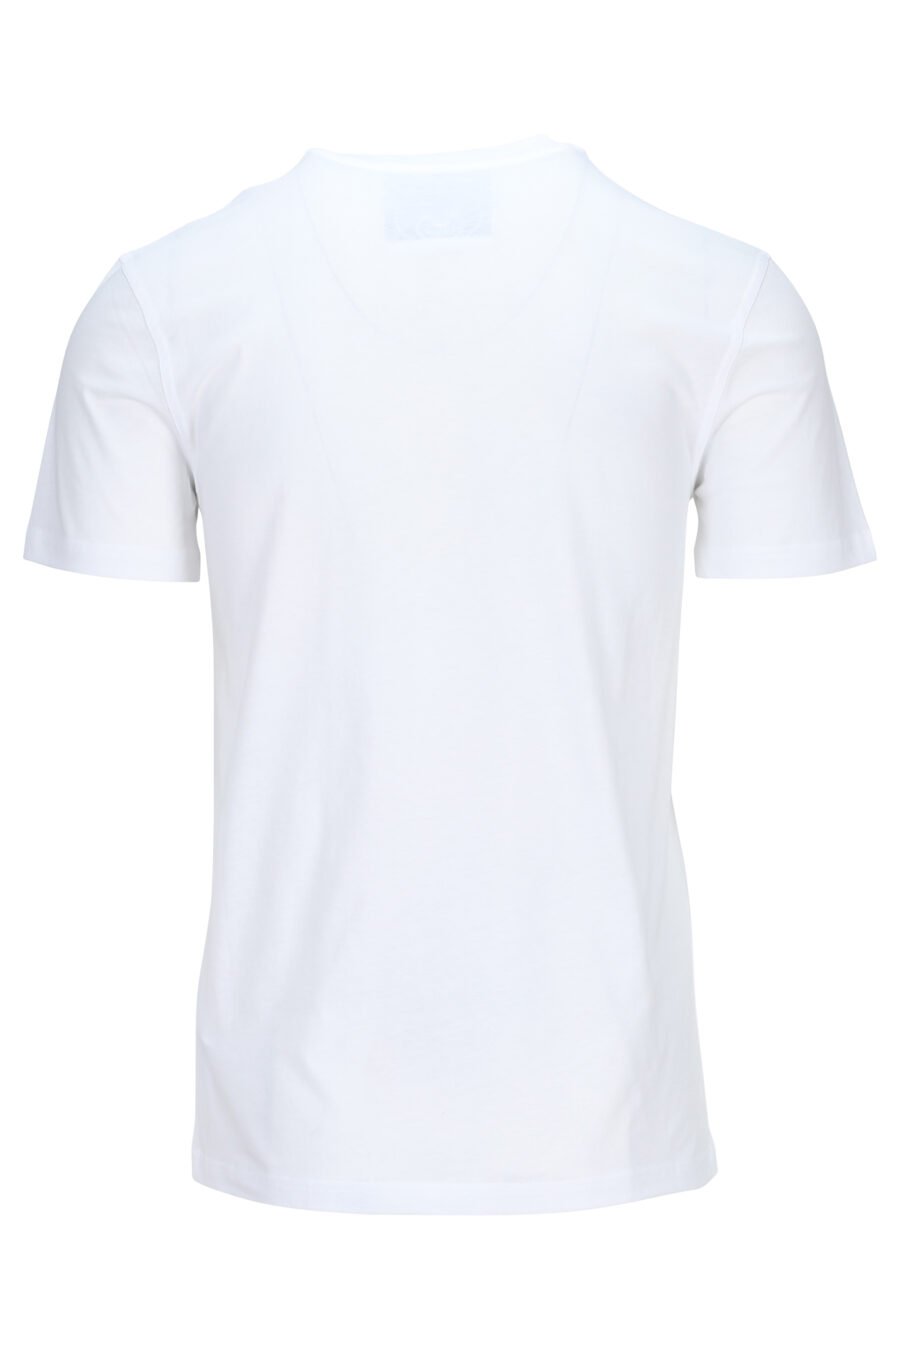 T-shirt branca em algodão ecológico com mini-logotipo preto "teddy" - 889316853131 1